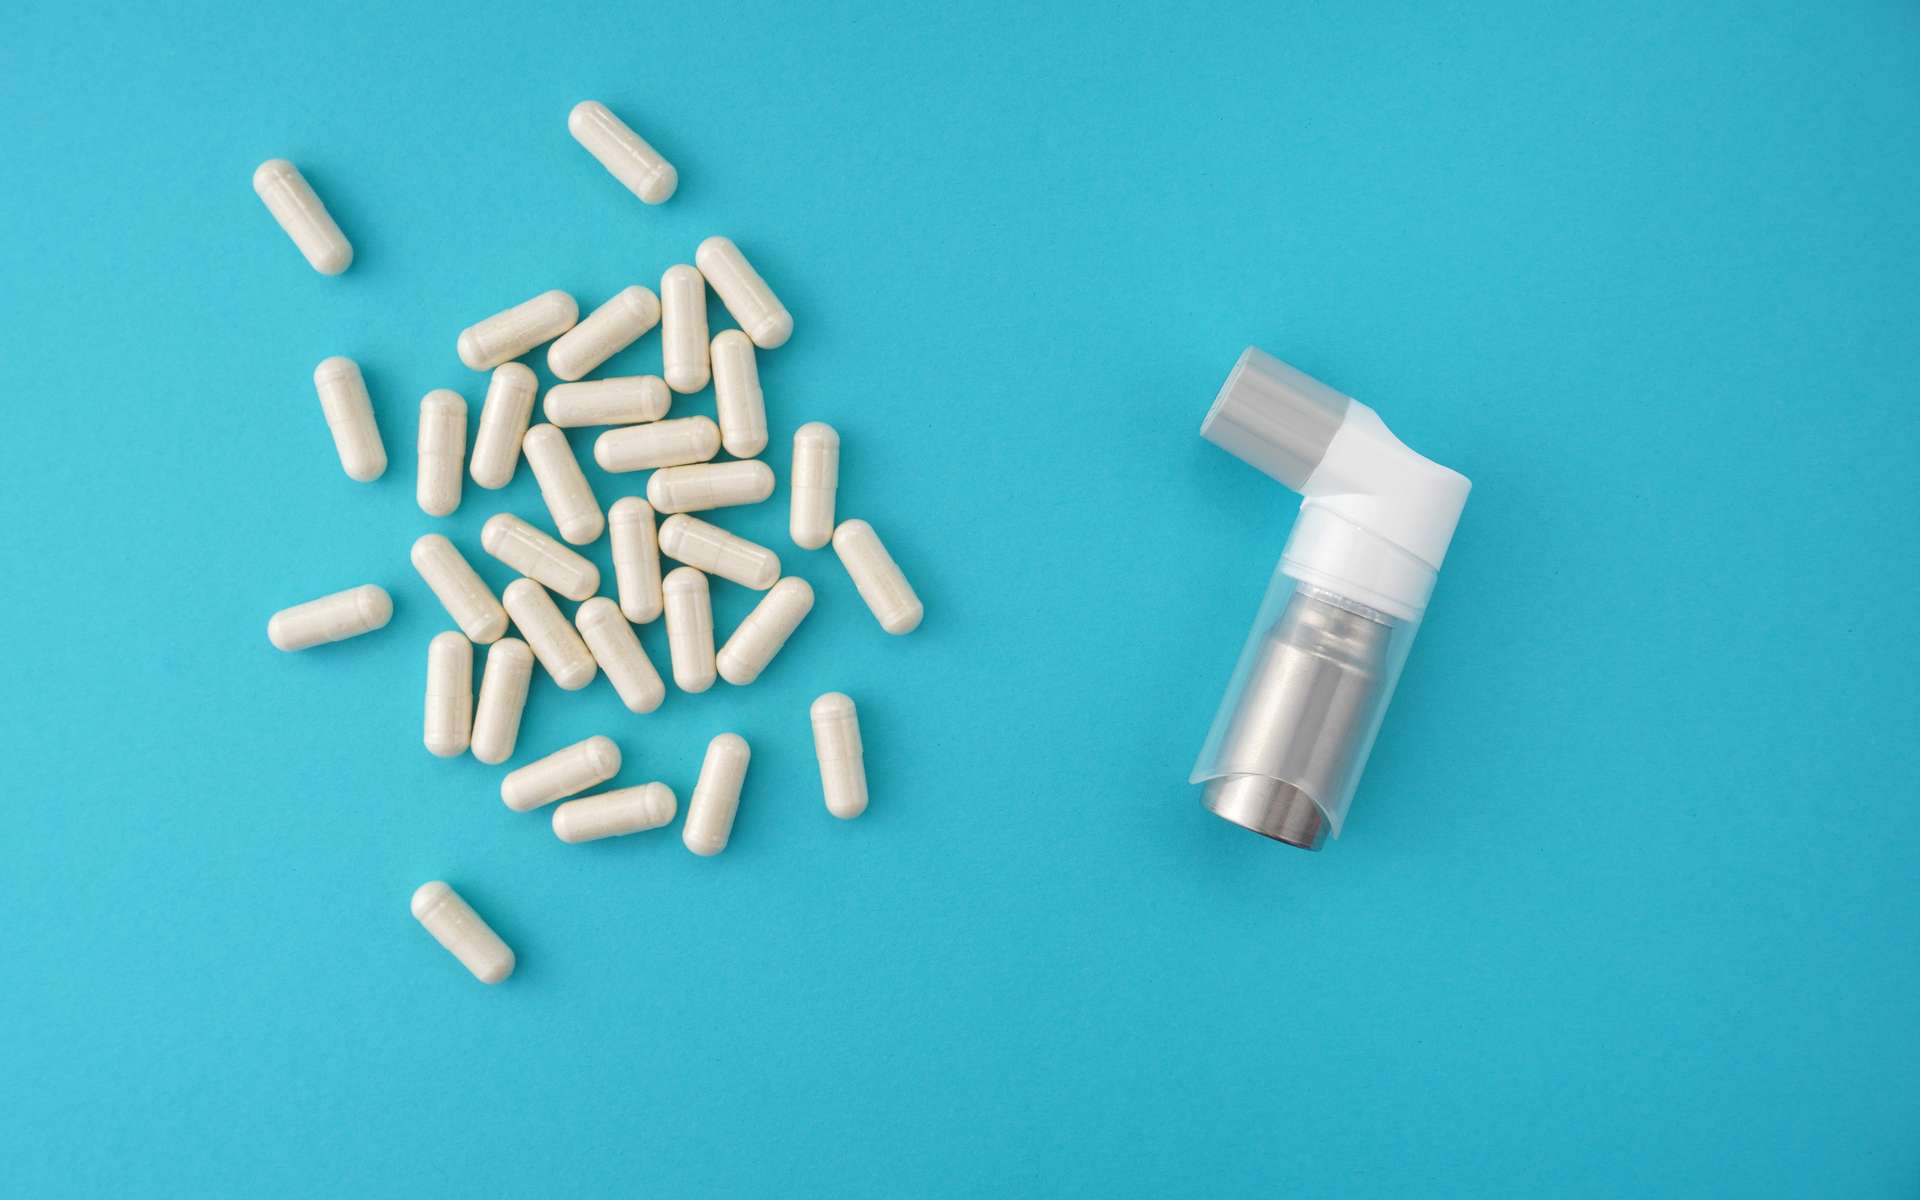 Les antibiotiques altèrent durablement le microbiote, ce qui pourrait accroître le risque d'asthme. © Яна Хоружева, Adobe Stock